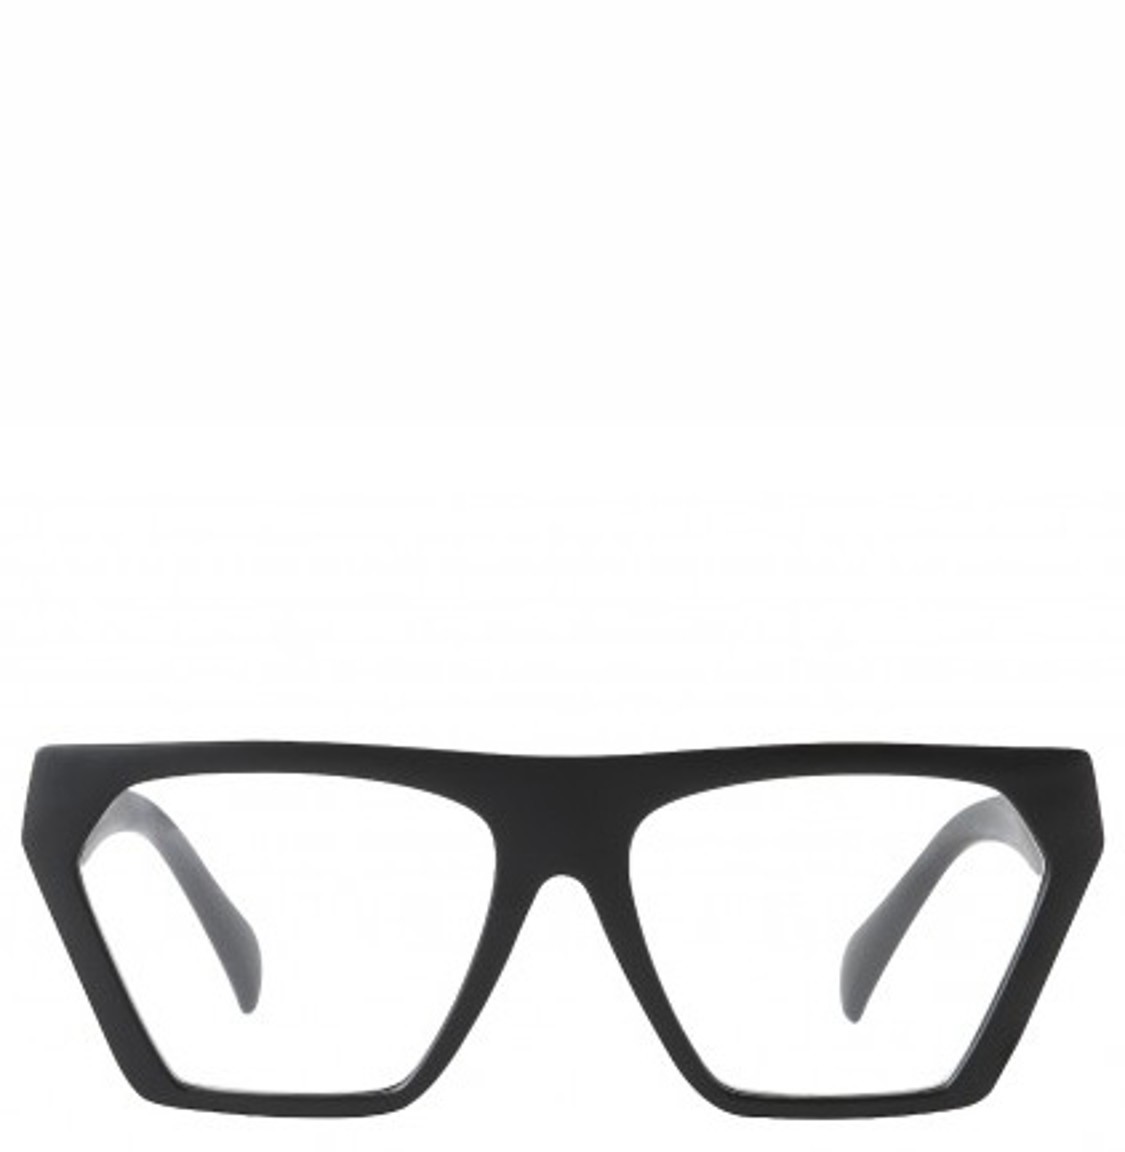 shop Thorberg  Occhiali: Occhiali Thorberg, occhiali da lettura, modello Mark, nero. number 1802